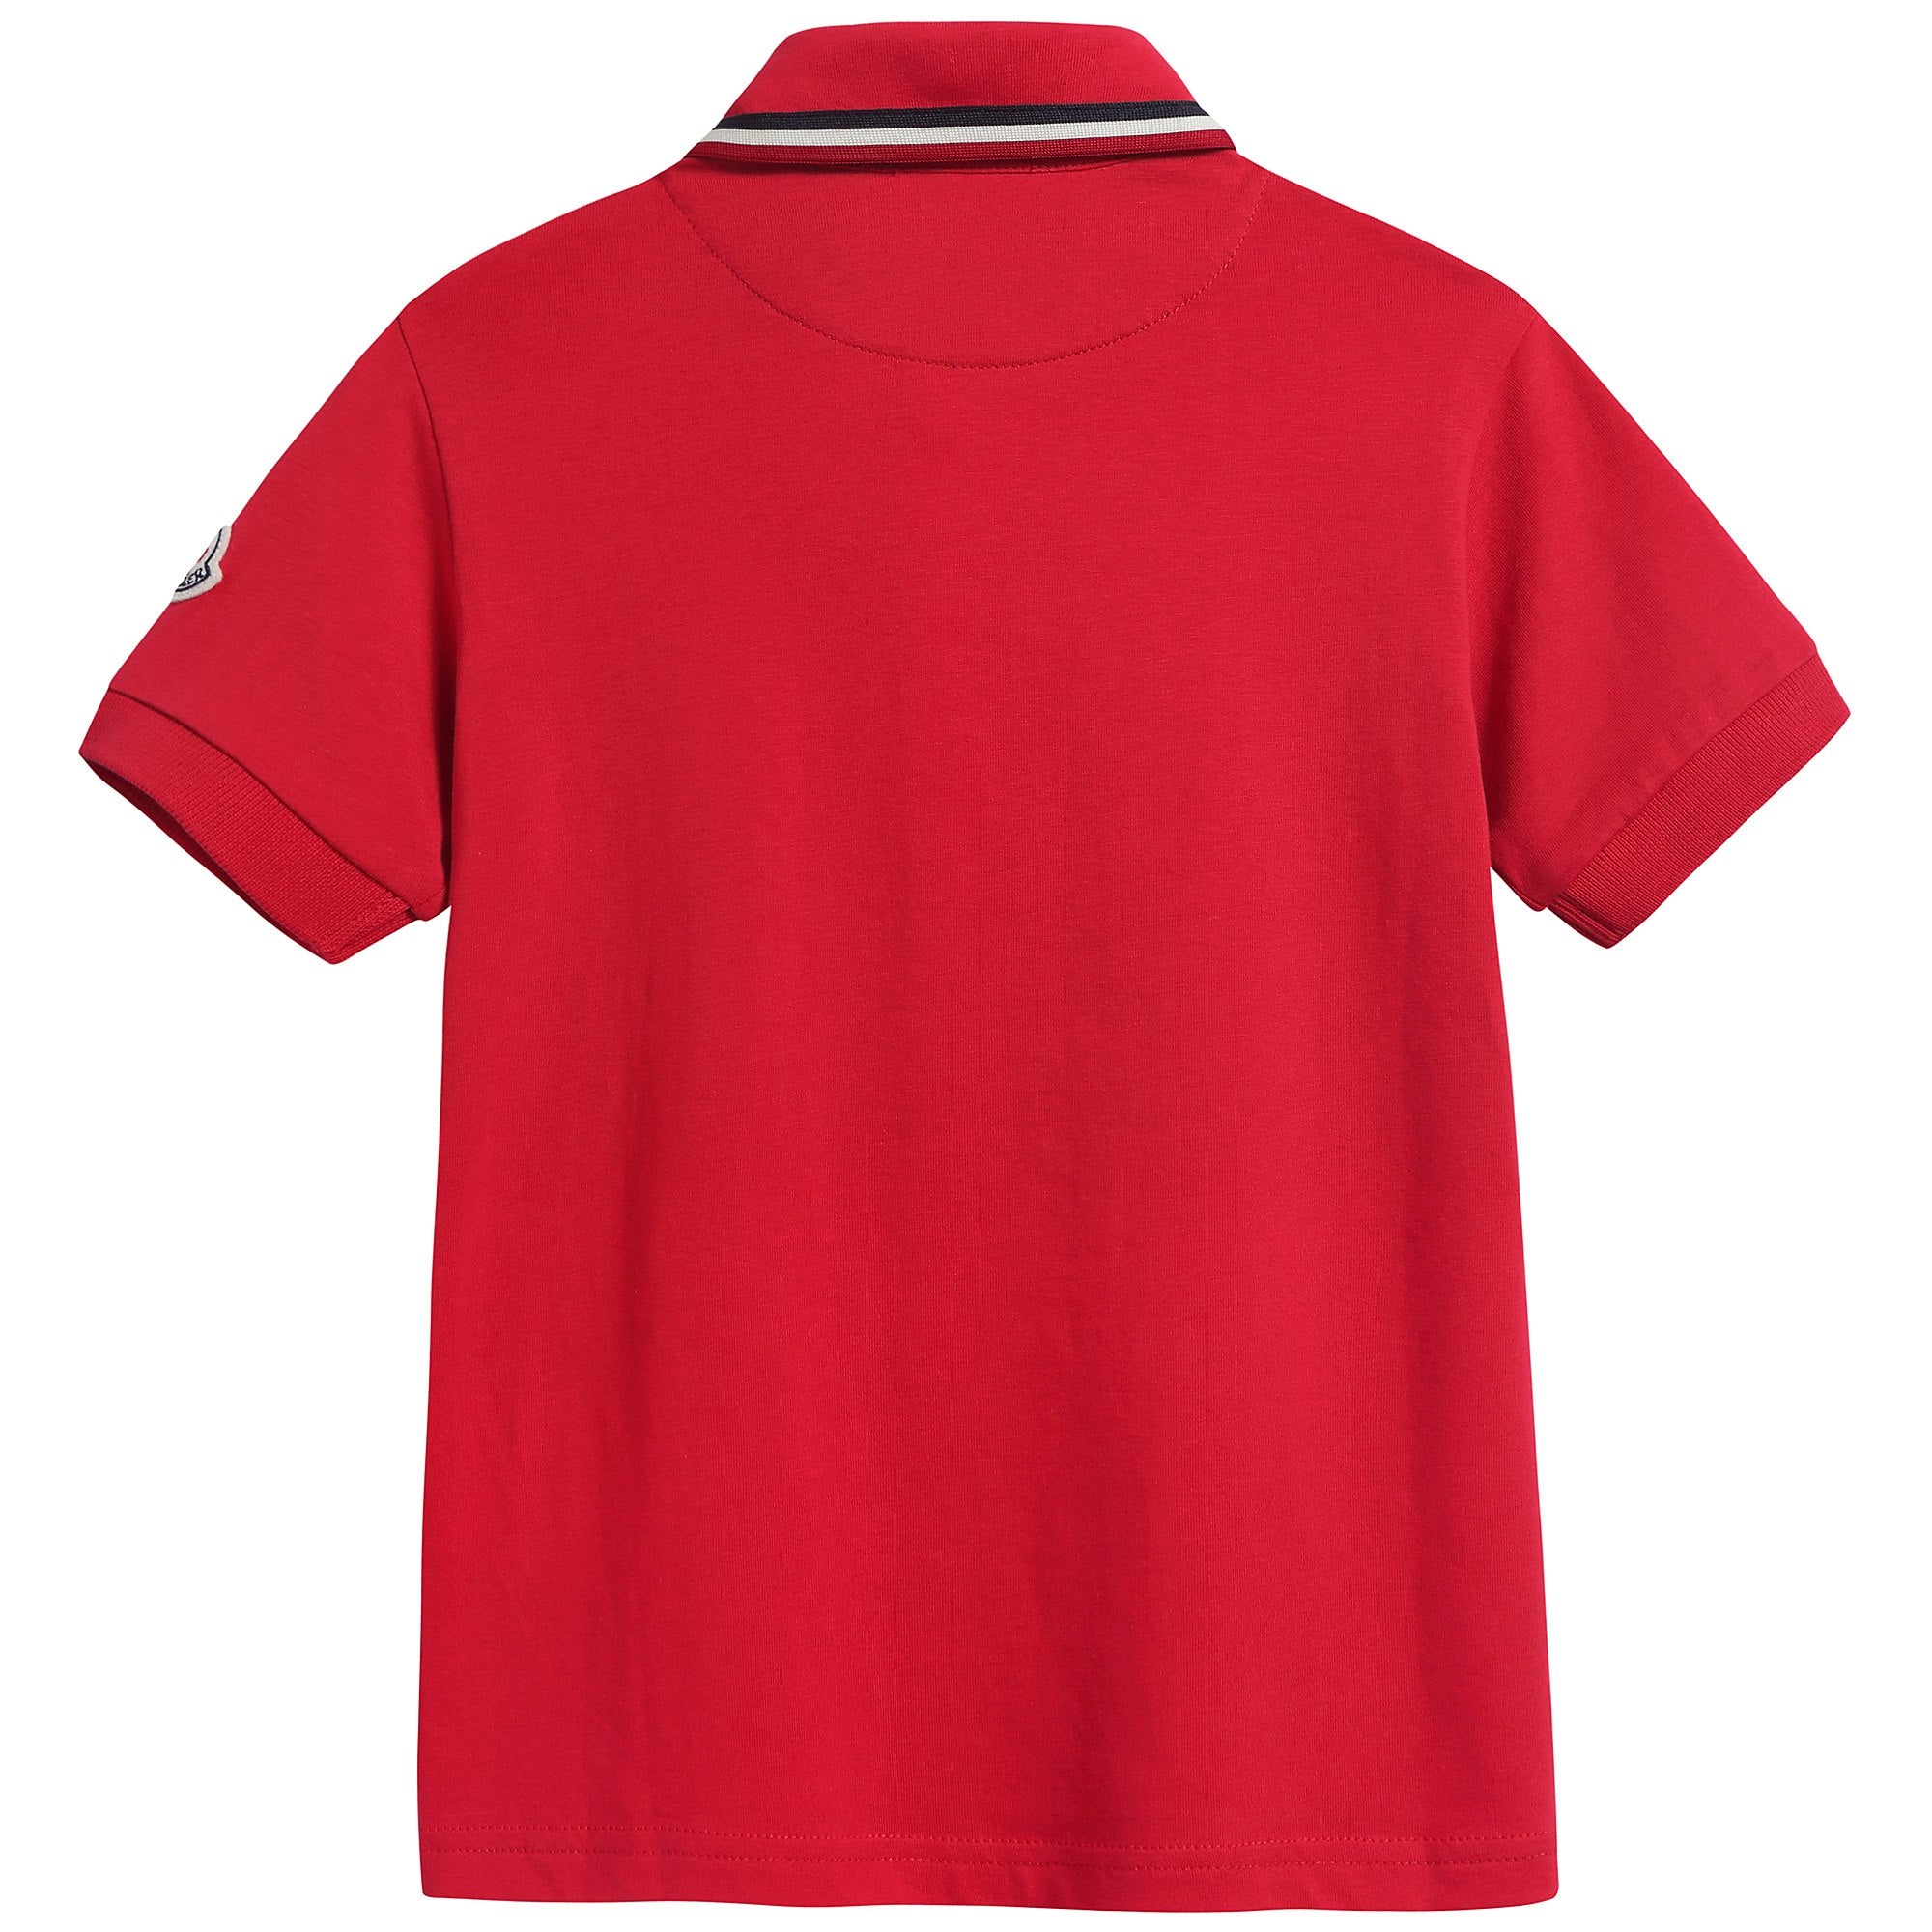 Boys Red "Maglia Polo Manica Corta" T-shirt